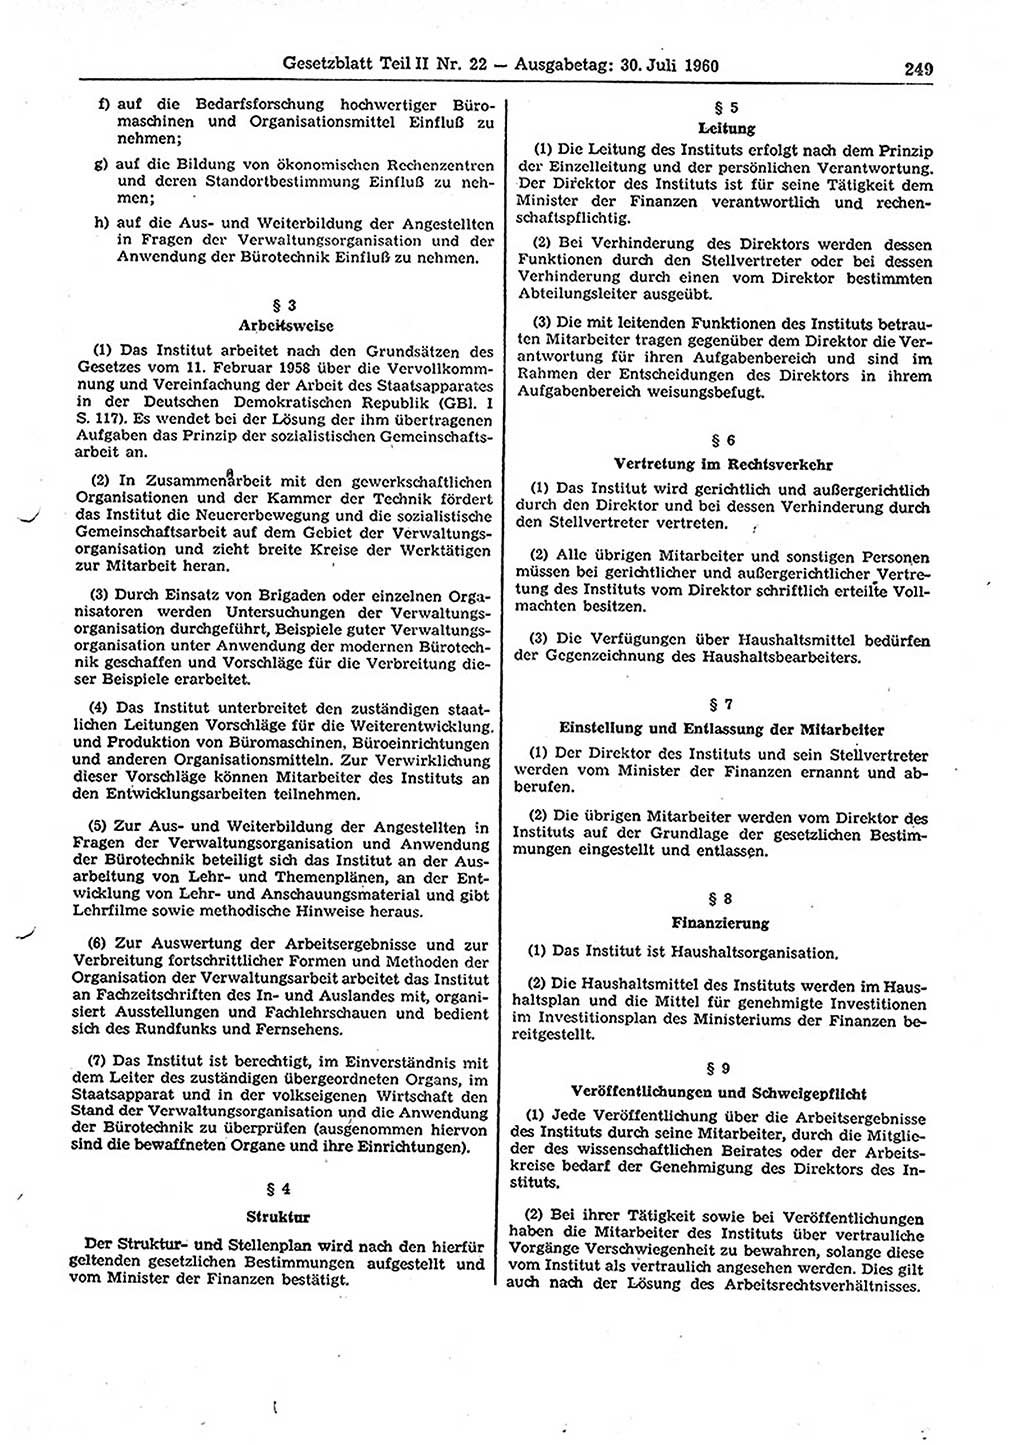 Gesetzblatt (GBl.) der Deutschen Demokratischen Republik (DDR) Teil ⅠⅠ 1960, Seite 249 (GBl. DDR ⅠⅠ 1960, S. 249)